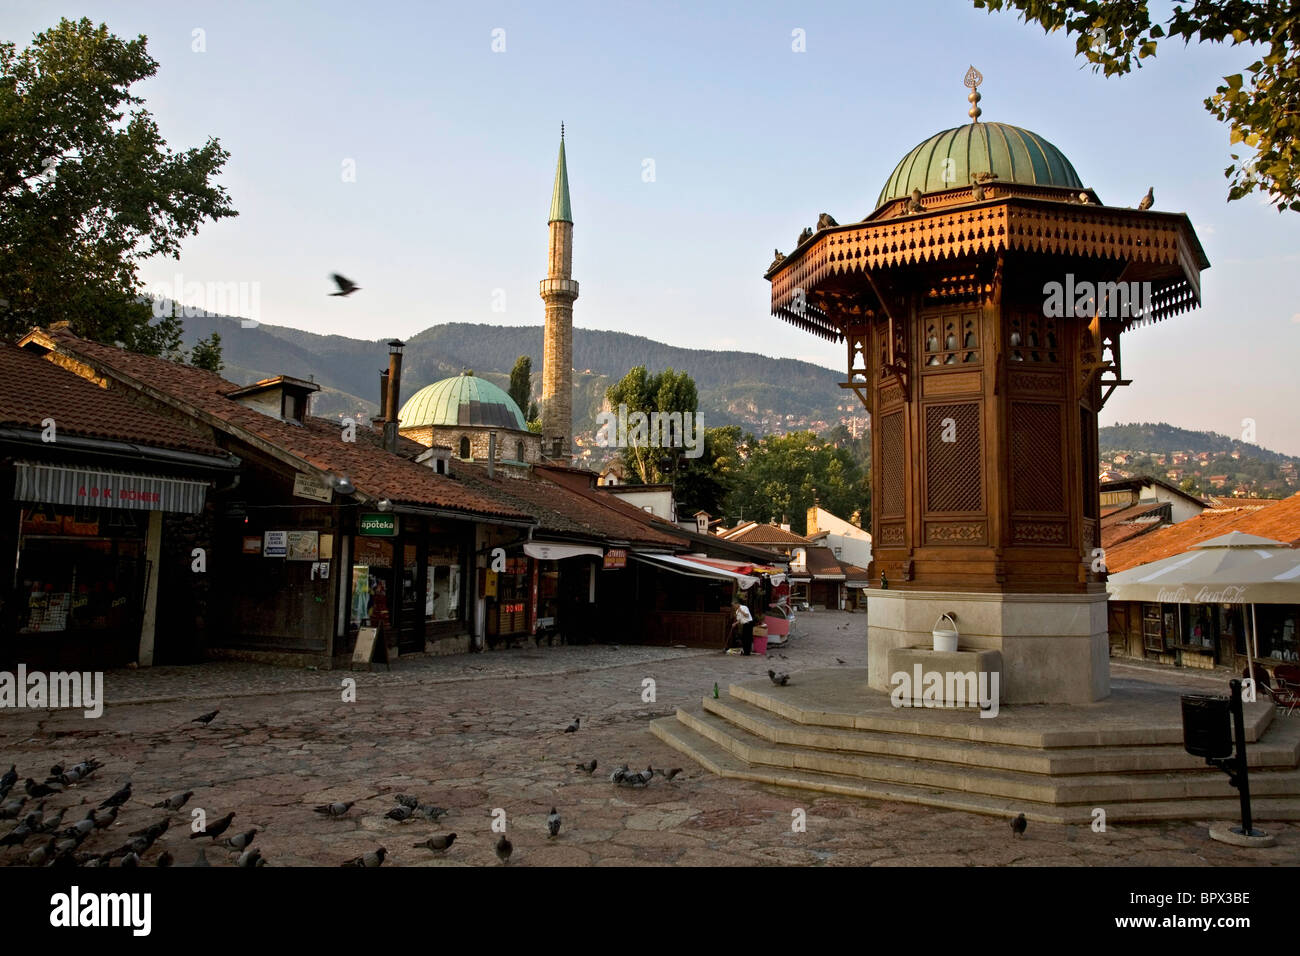 Una piazza di Sarajevo della vecchia città nel quartiere Bascarsija, mostrando il Sebilj e il minareto di Gazi Husrev-beg moschea Foto Stock